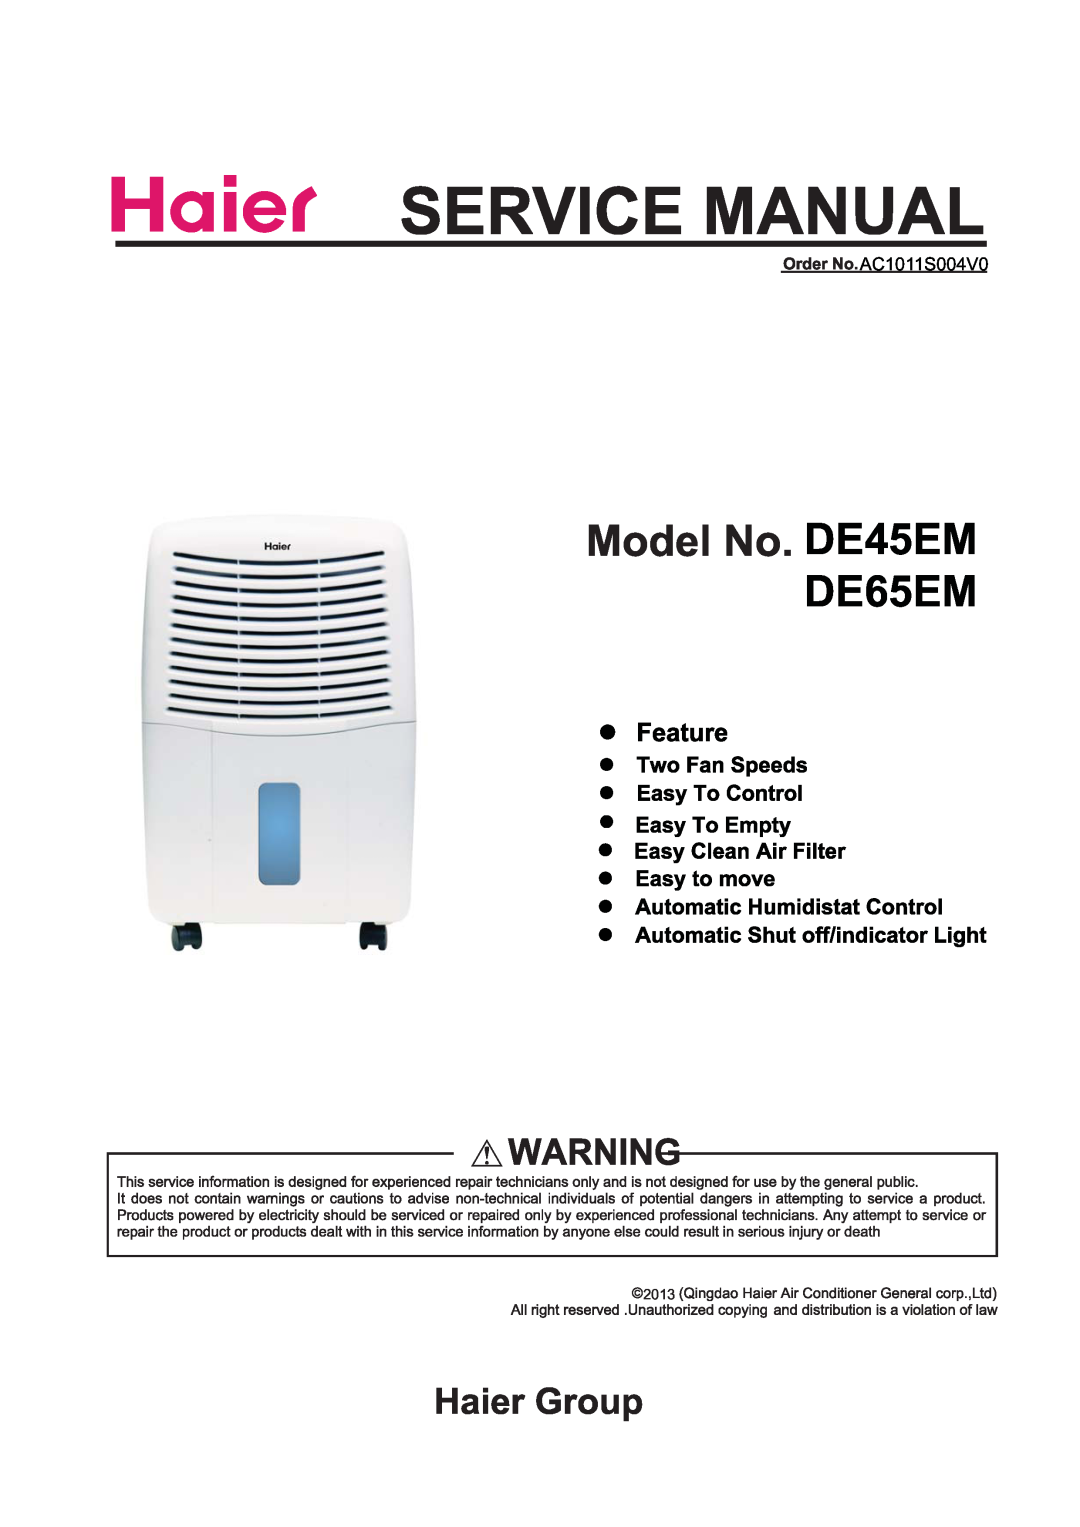 Haier manual DE45EM DE65EM, AC1011S004V0, 2013 